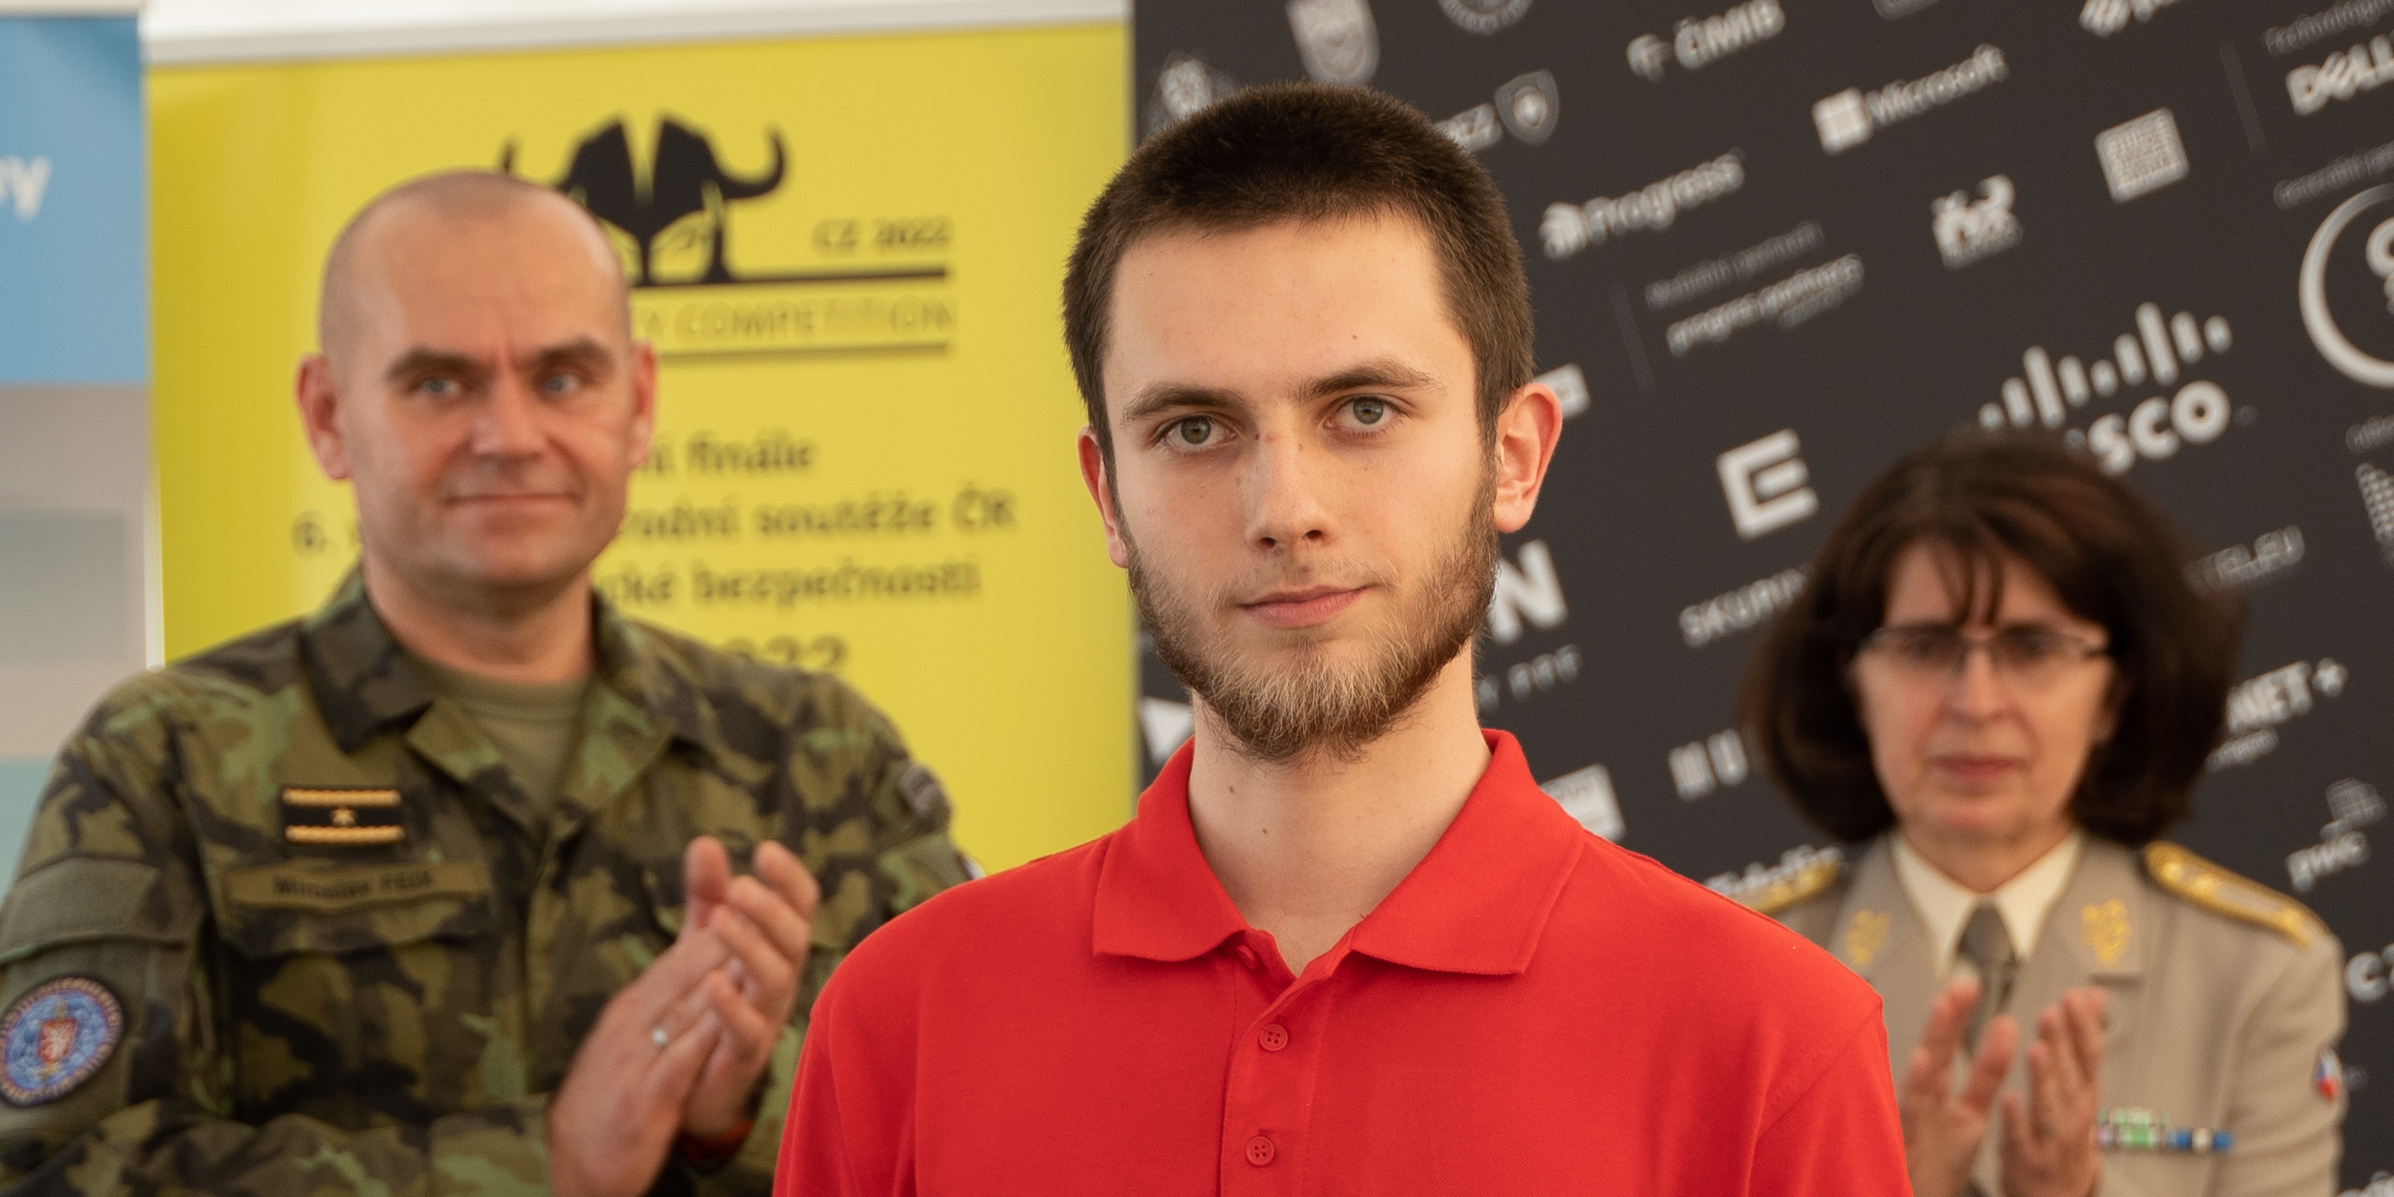 The best Czech ethical hacker is Peter Melniček from FI MU